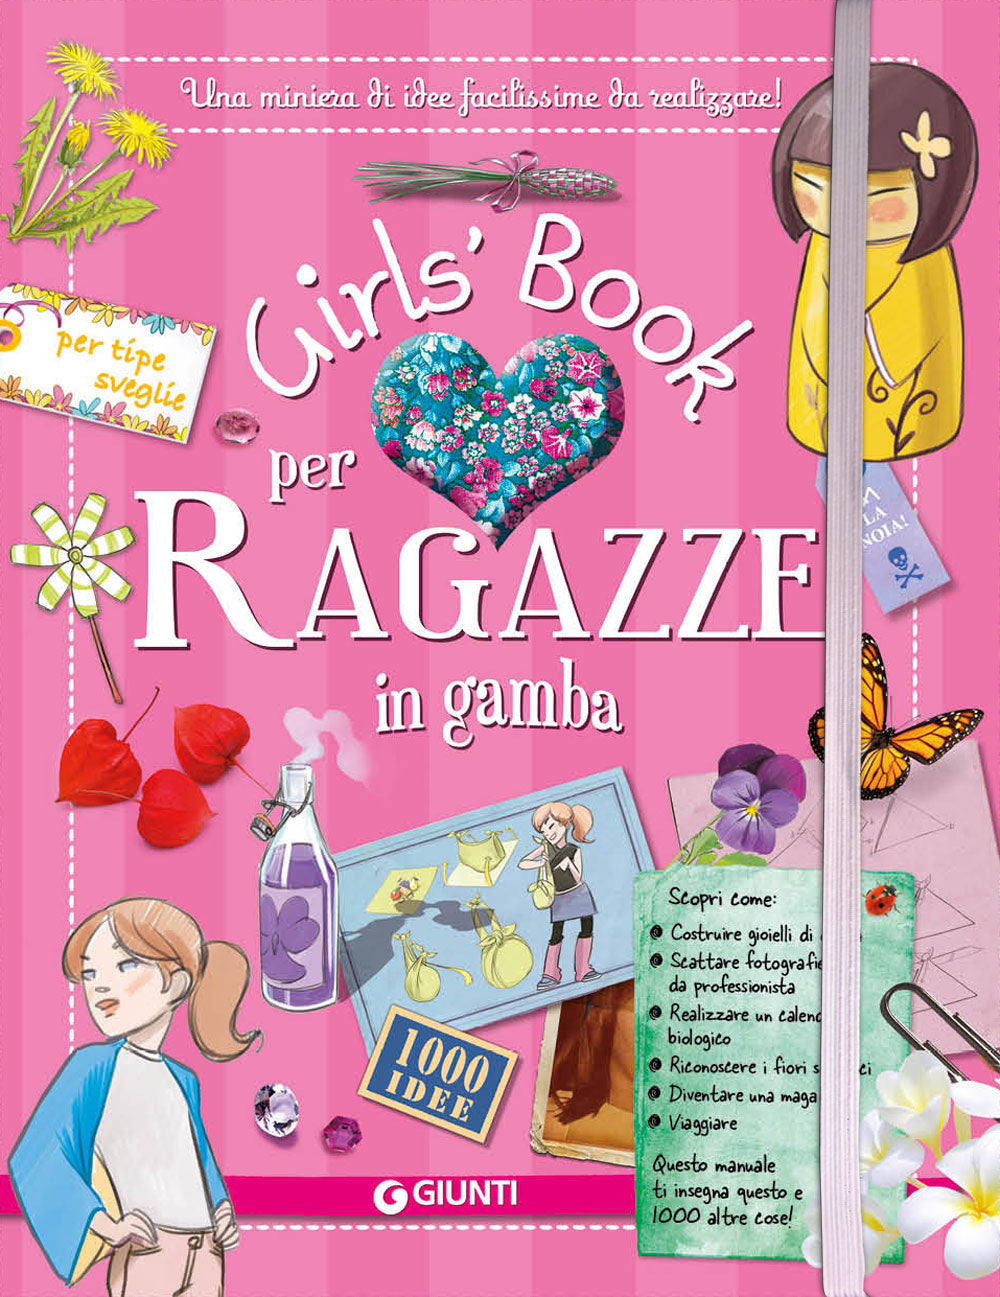 Girls' Book per Ragazze in gamba::Una miniera di idee facilissime da realizzare! 1000 idee per tipe sveglie